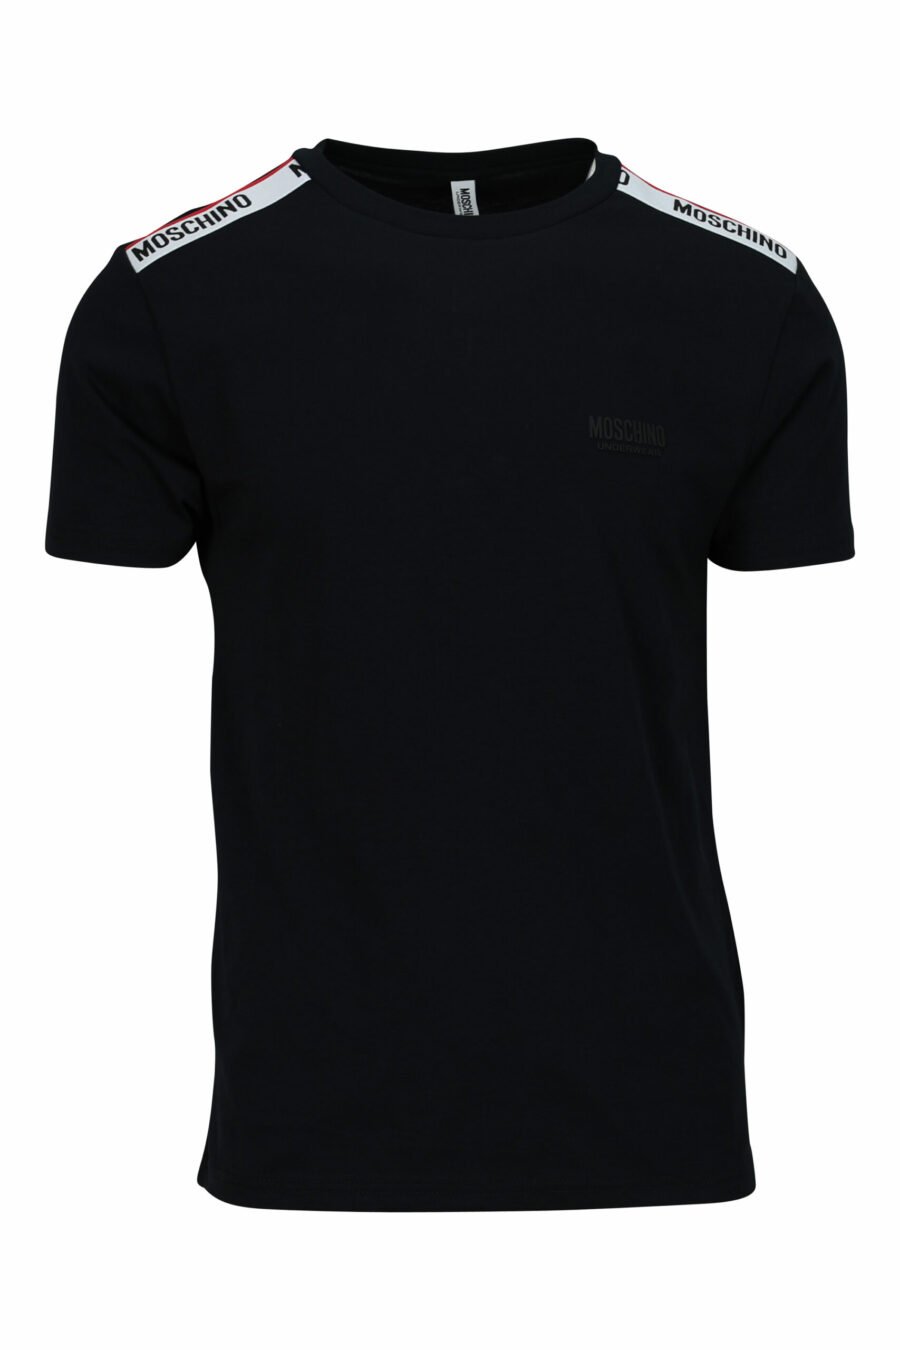 Camiseta negra con logo blanco con detalle rojo en cinta en hombros - 667113604275 scaled